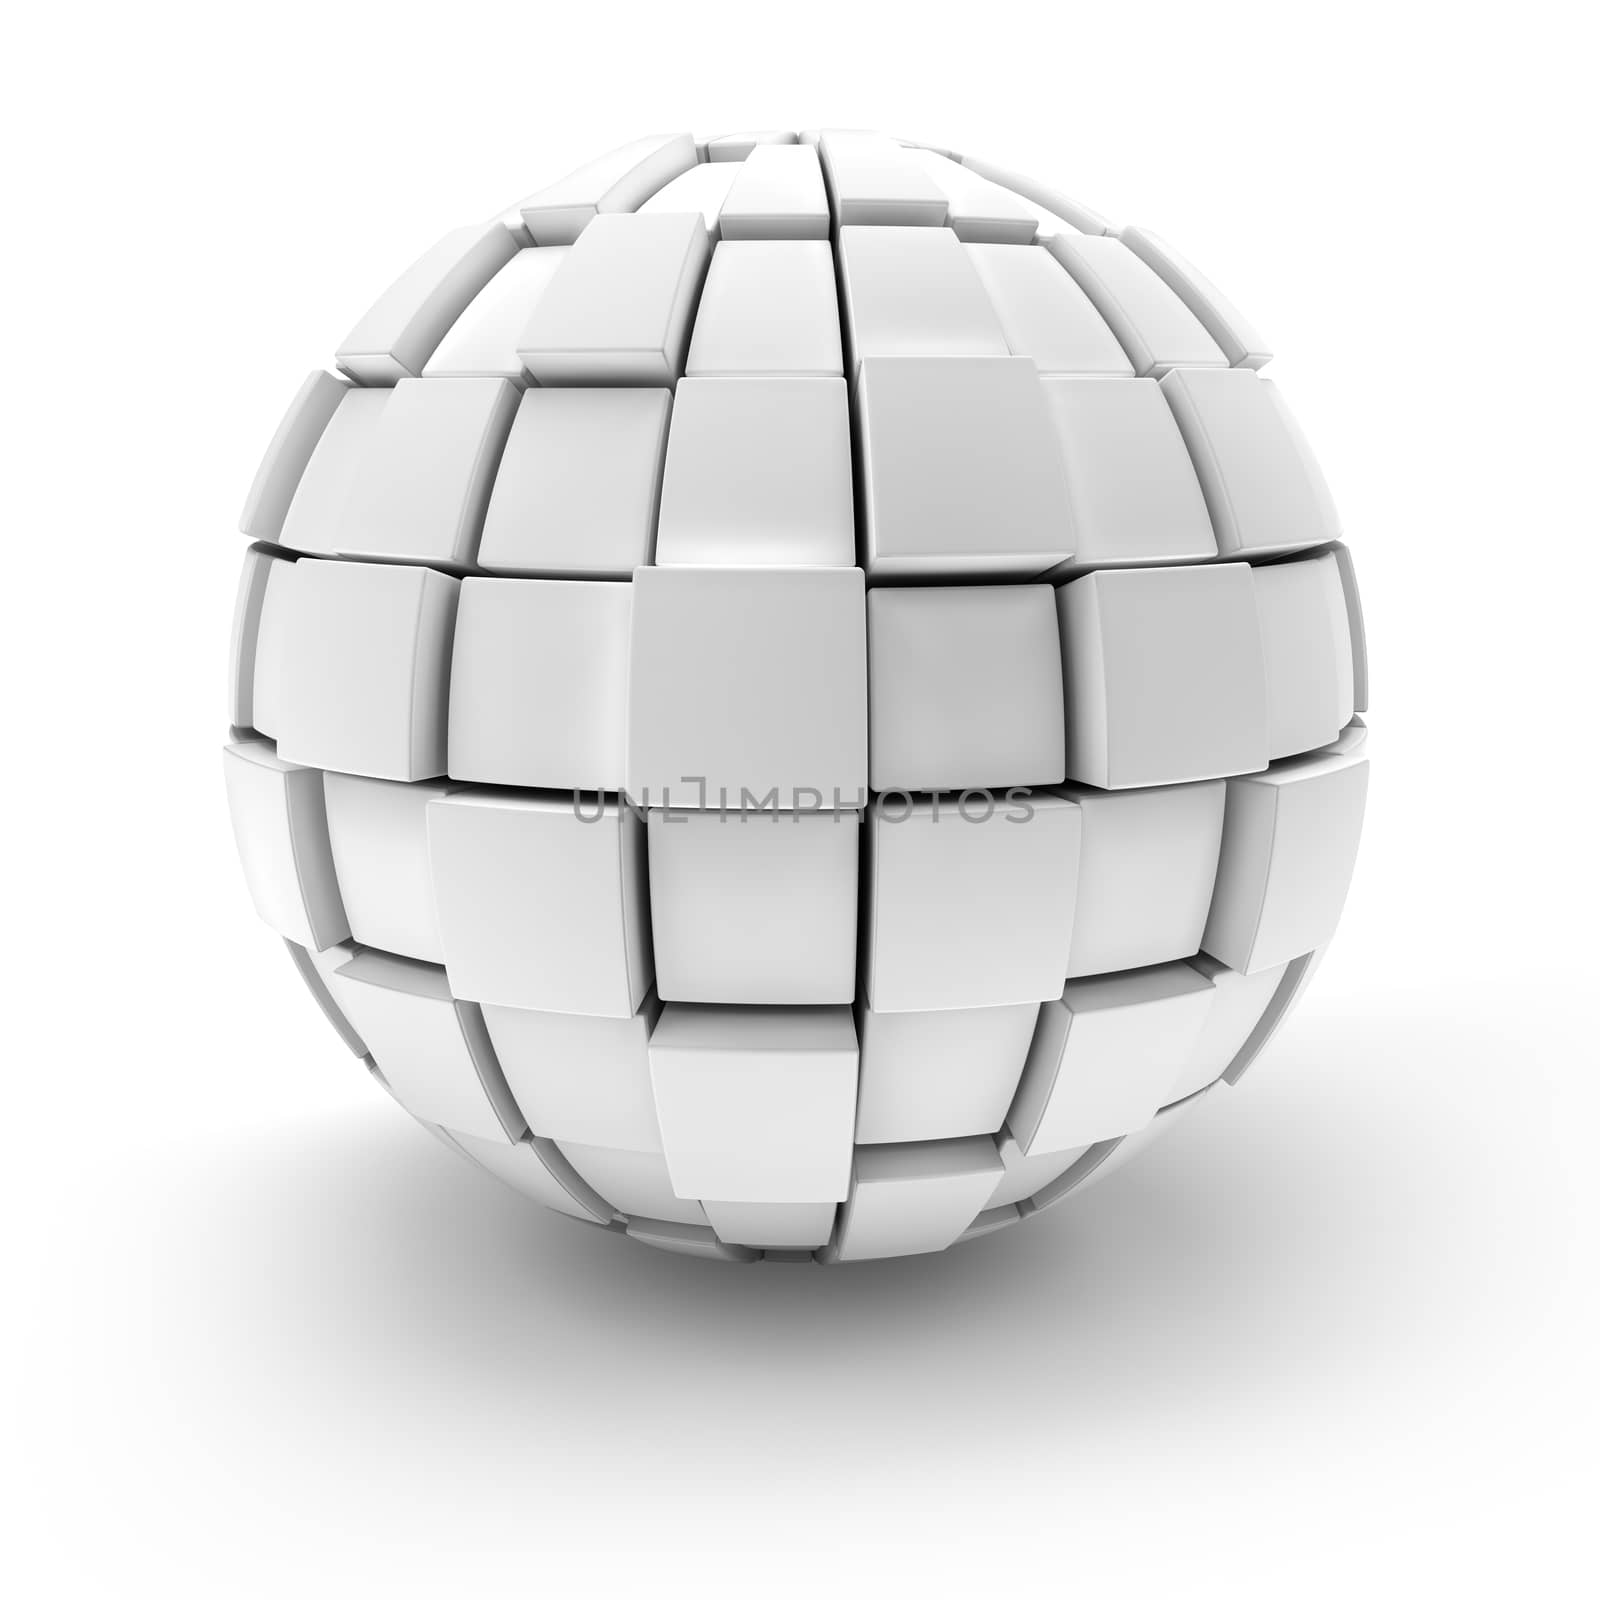 Blank sphere formed by blocks, 3d render by ymgerman